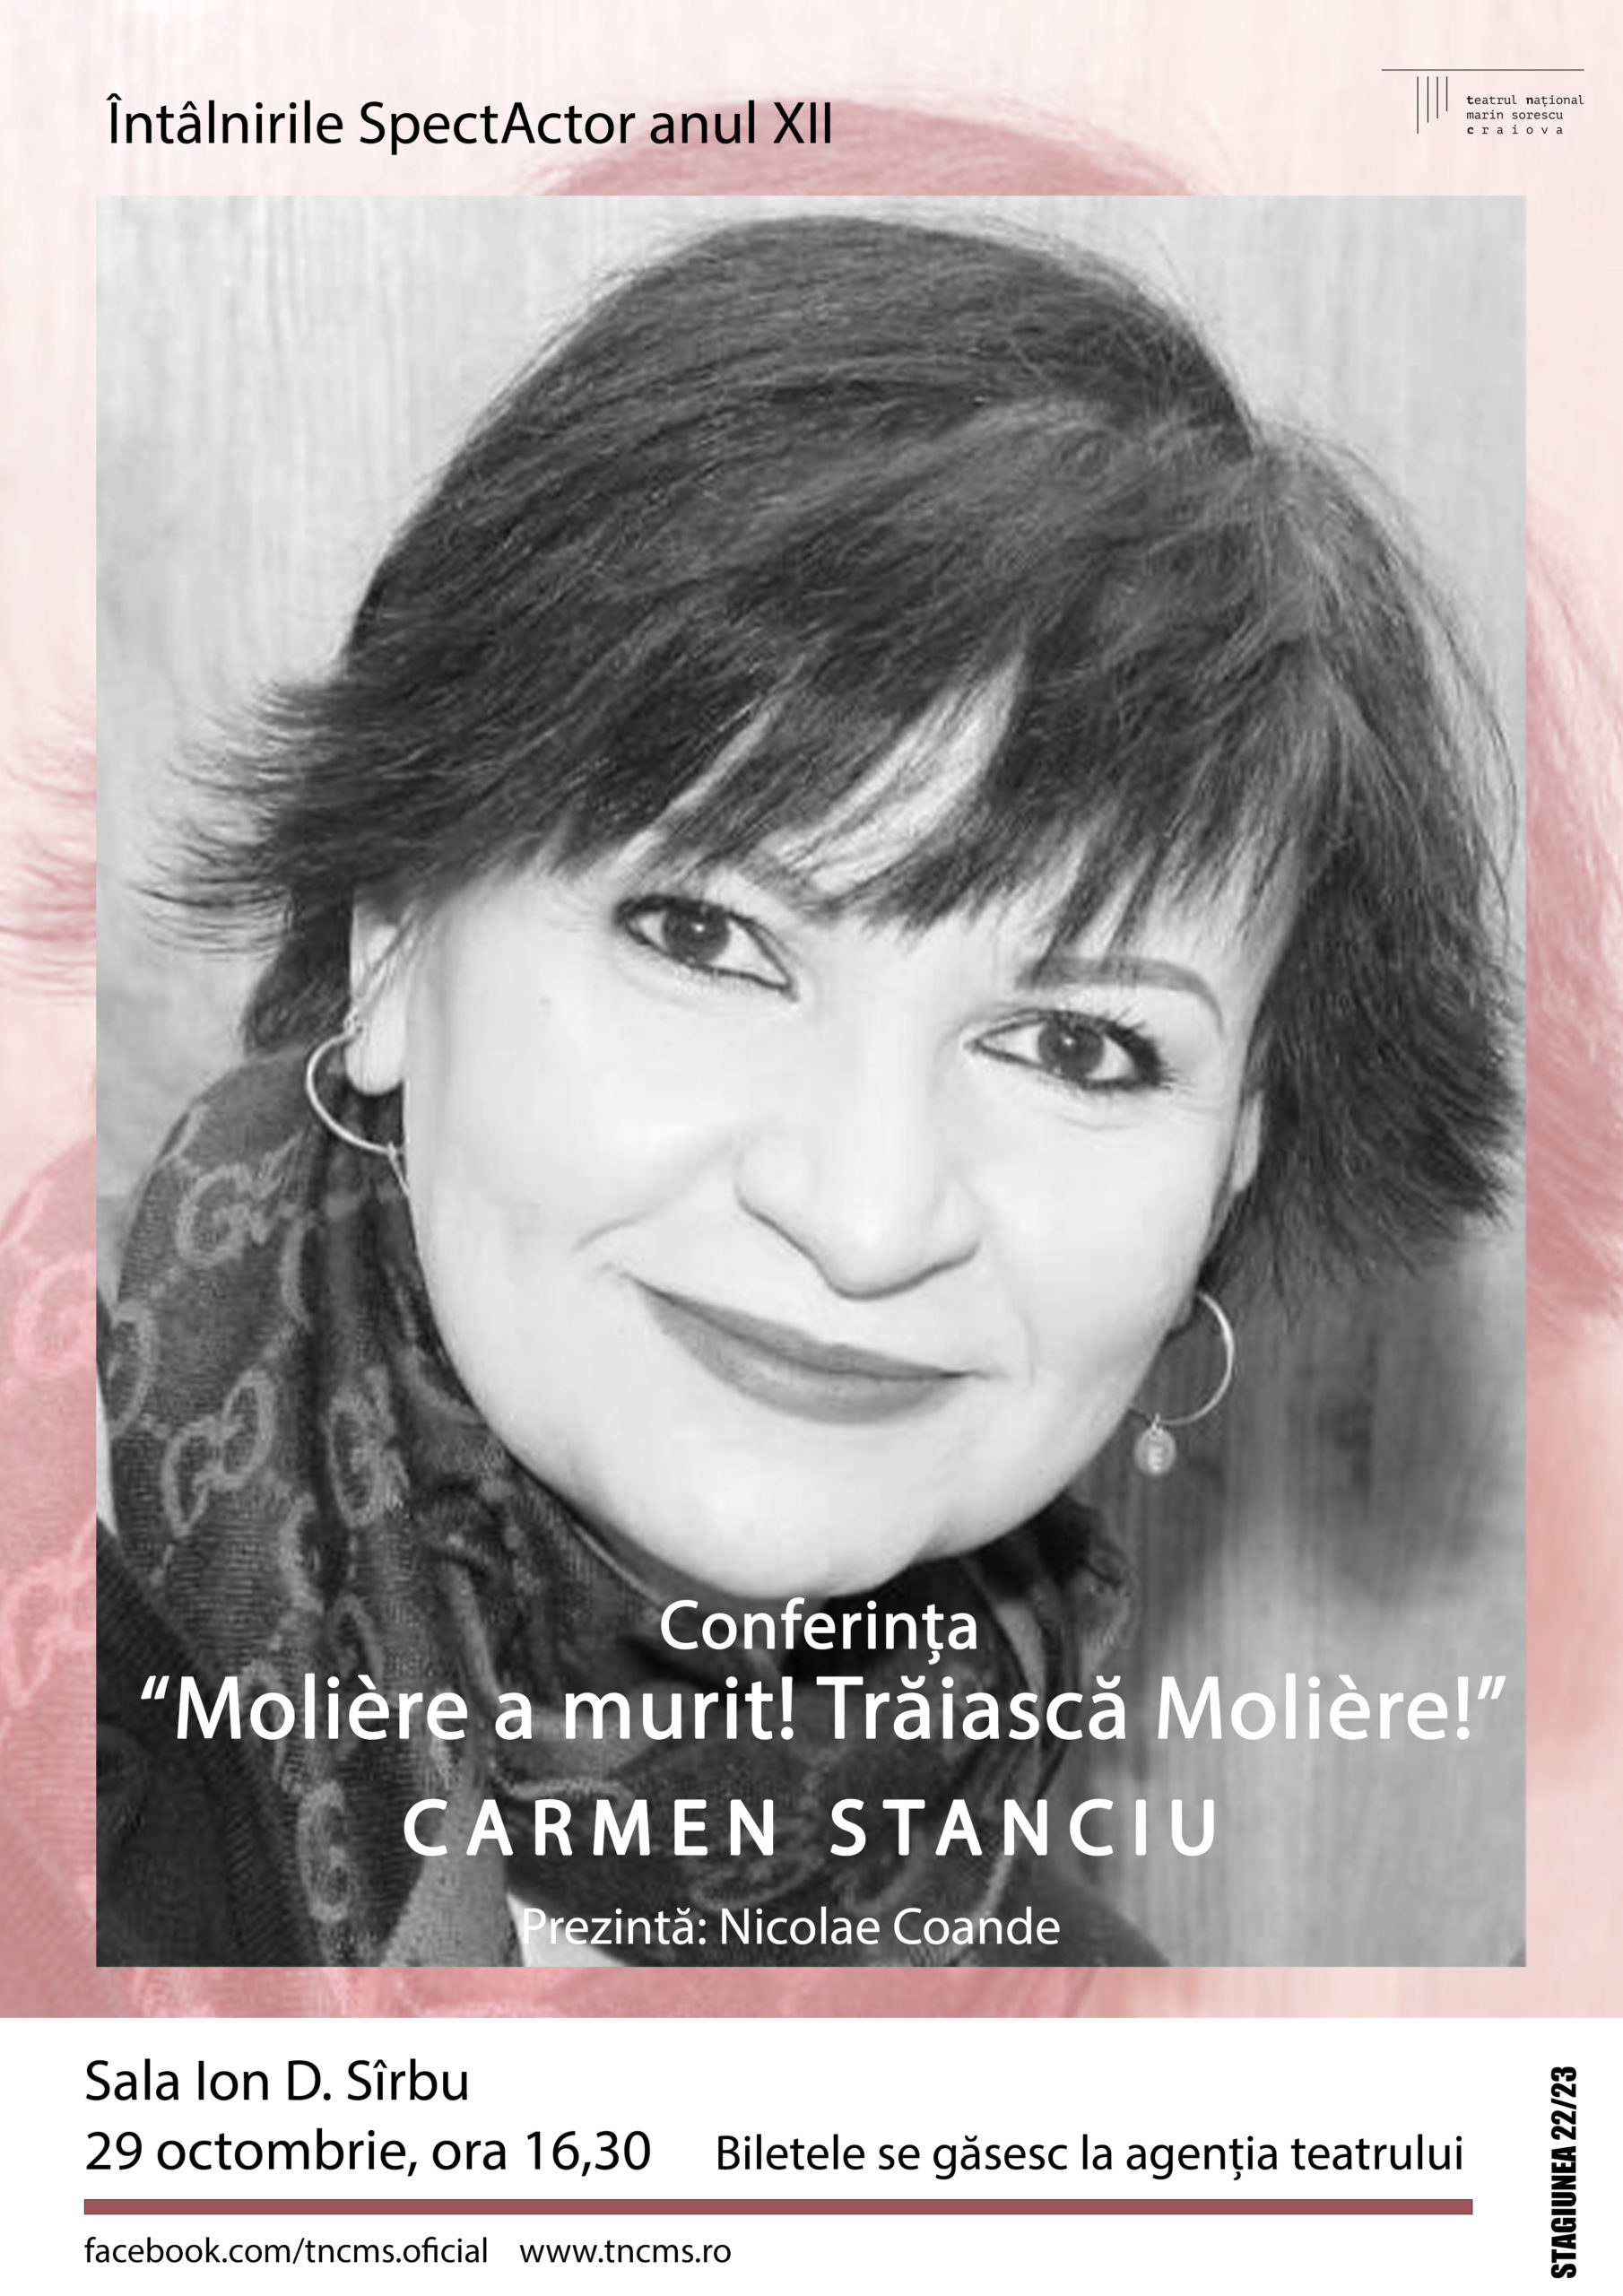 Carmen Stanciu, teatrolog și critic de teatru, va susține, la întâlnirile SpectActor, conferința “Molière a murit! Trăiască Molière!”